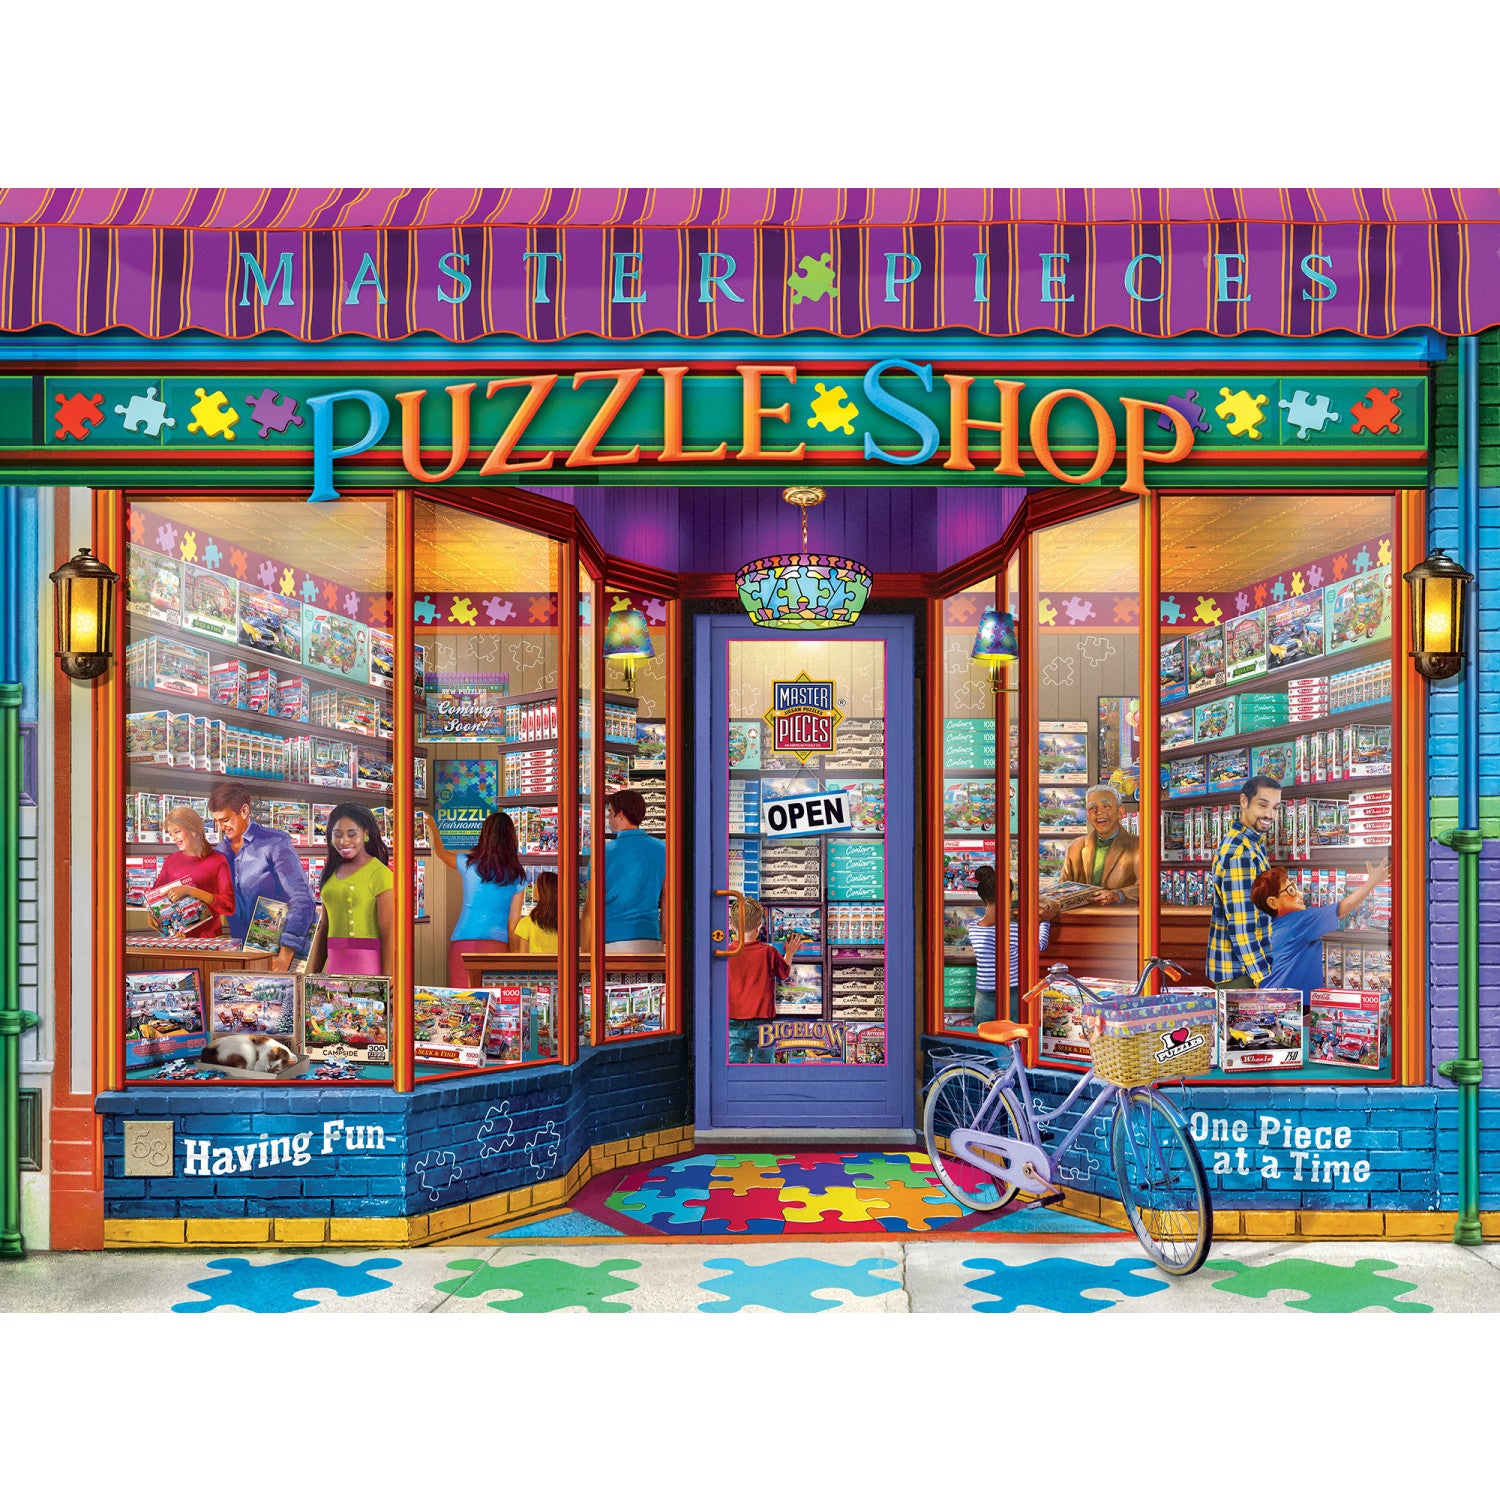 Shopkeepers - Puzzle Emporium 750 Piece Puzzle